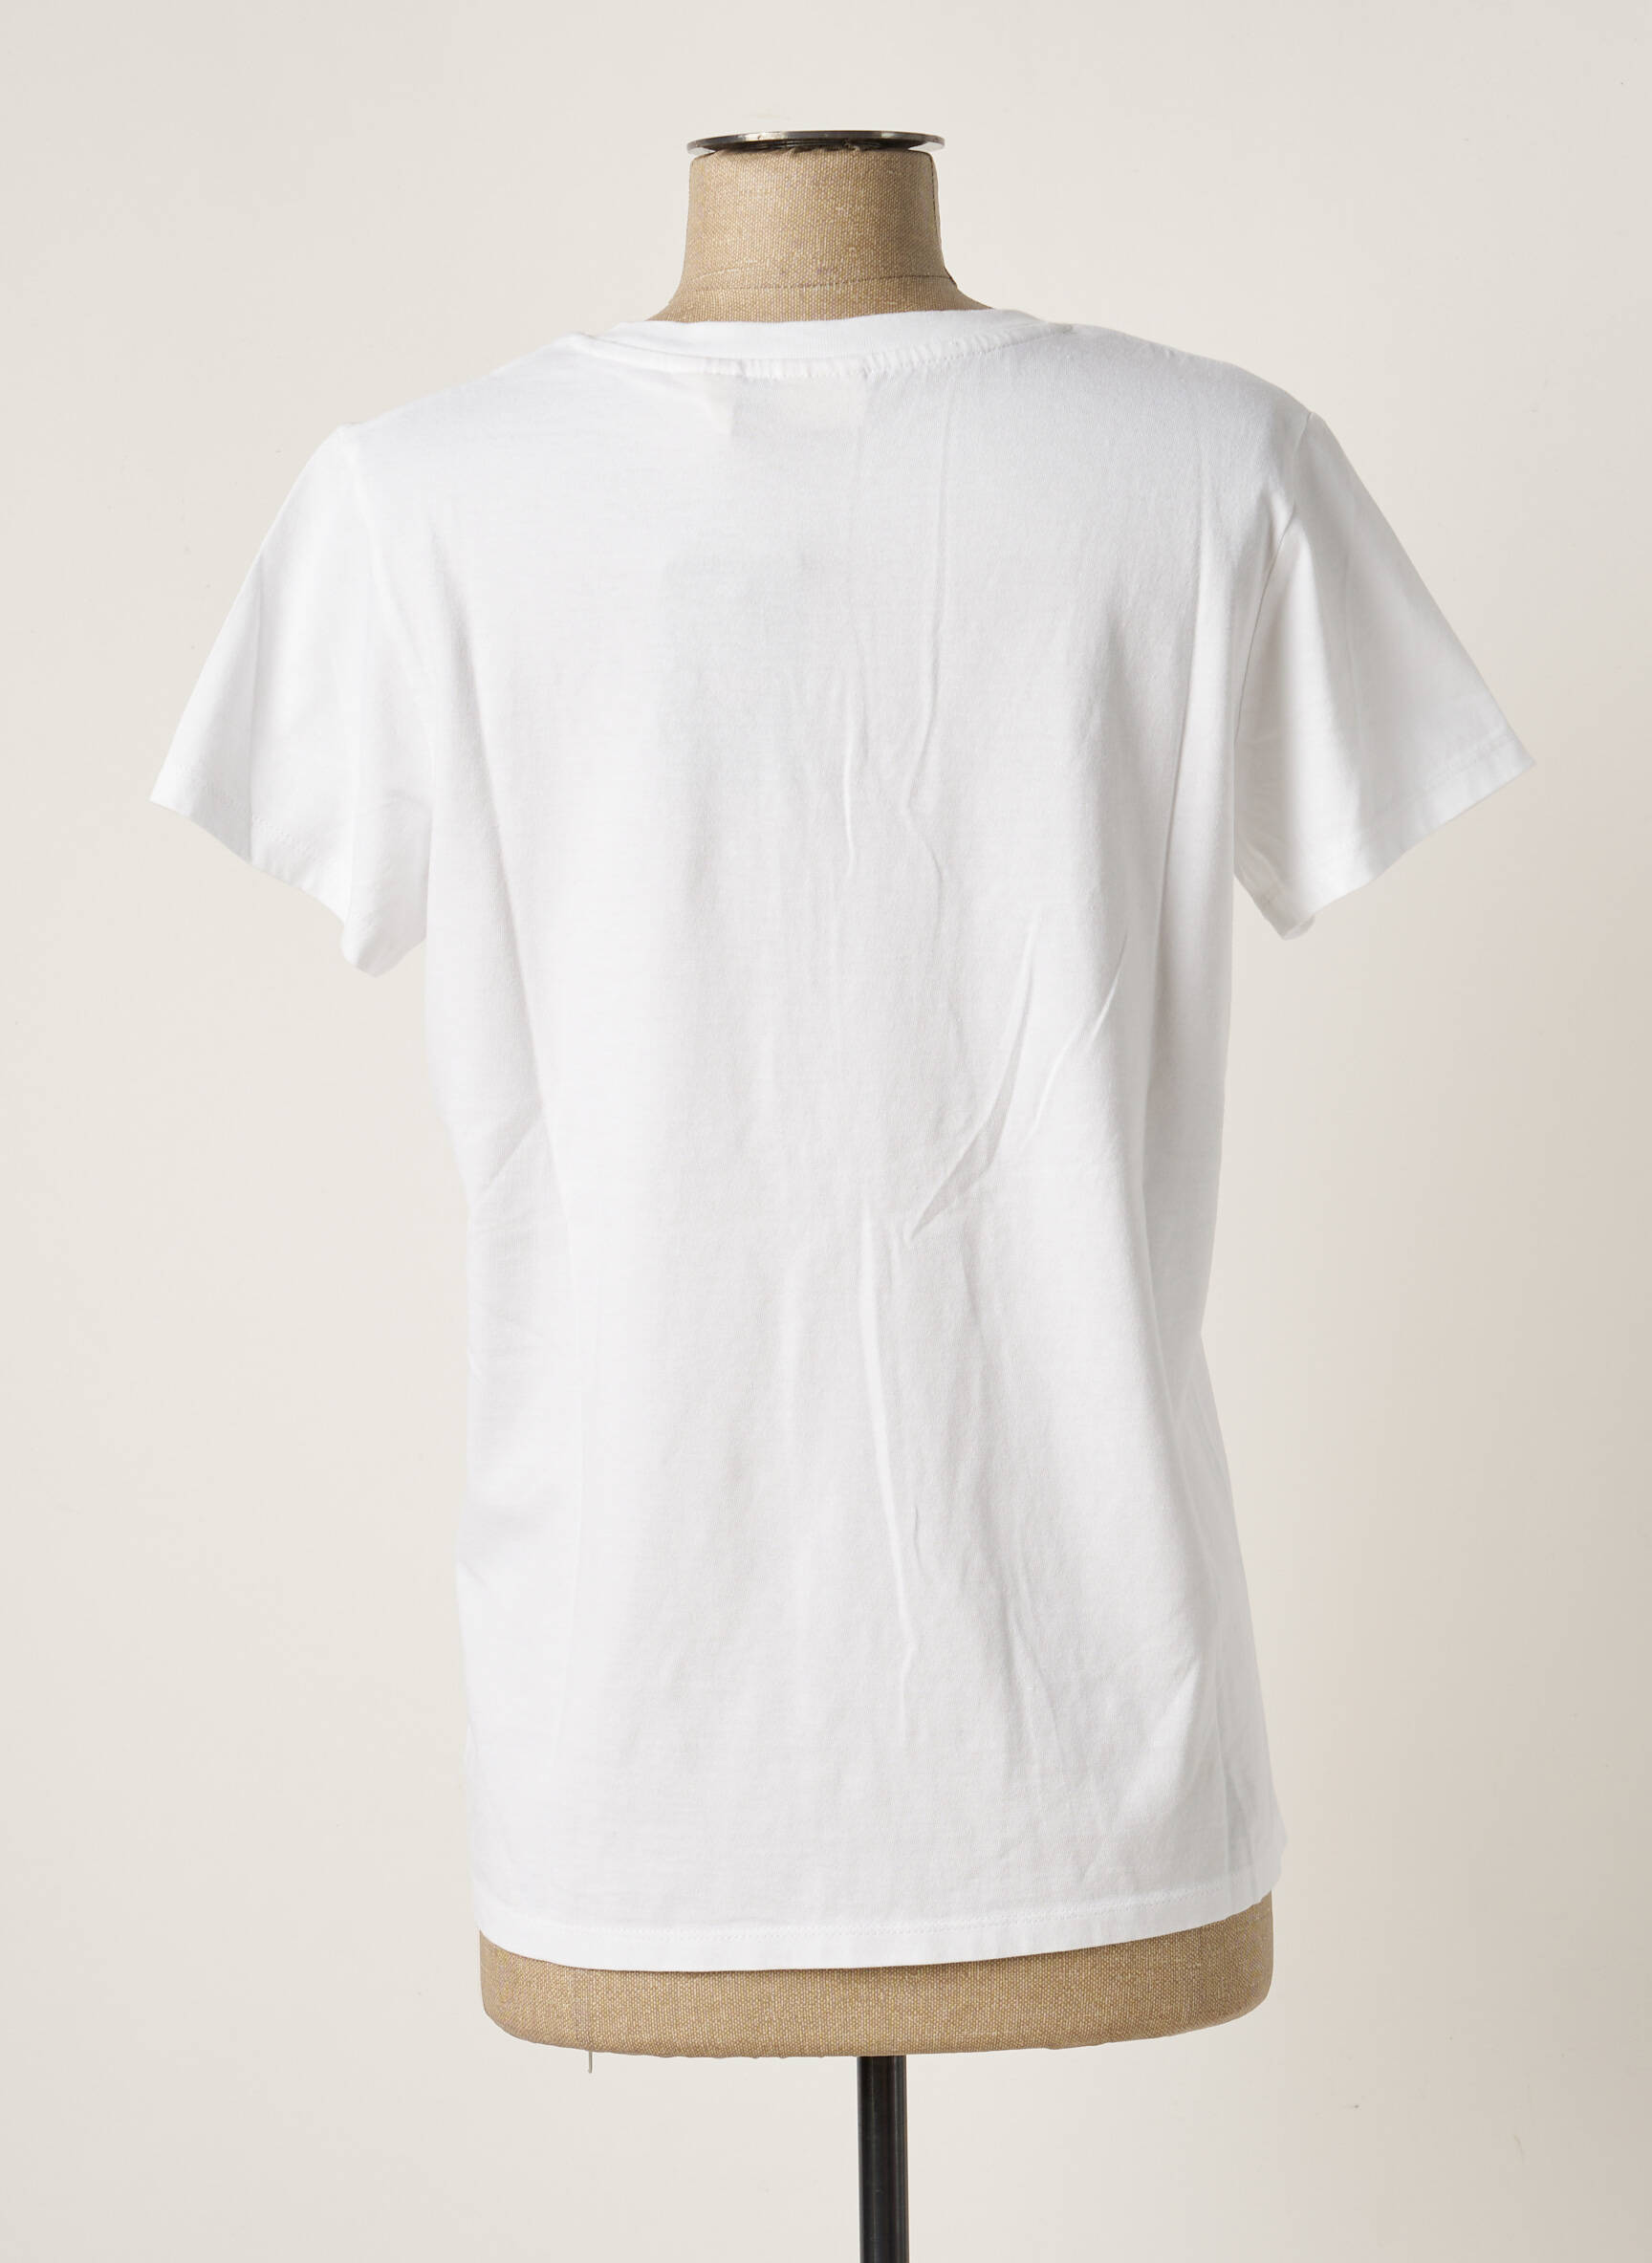 LOUIS VUITTON T-shirt de couleur blanc en soldes pas cher 1557490-blanc0 -  Modz